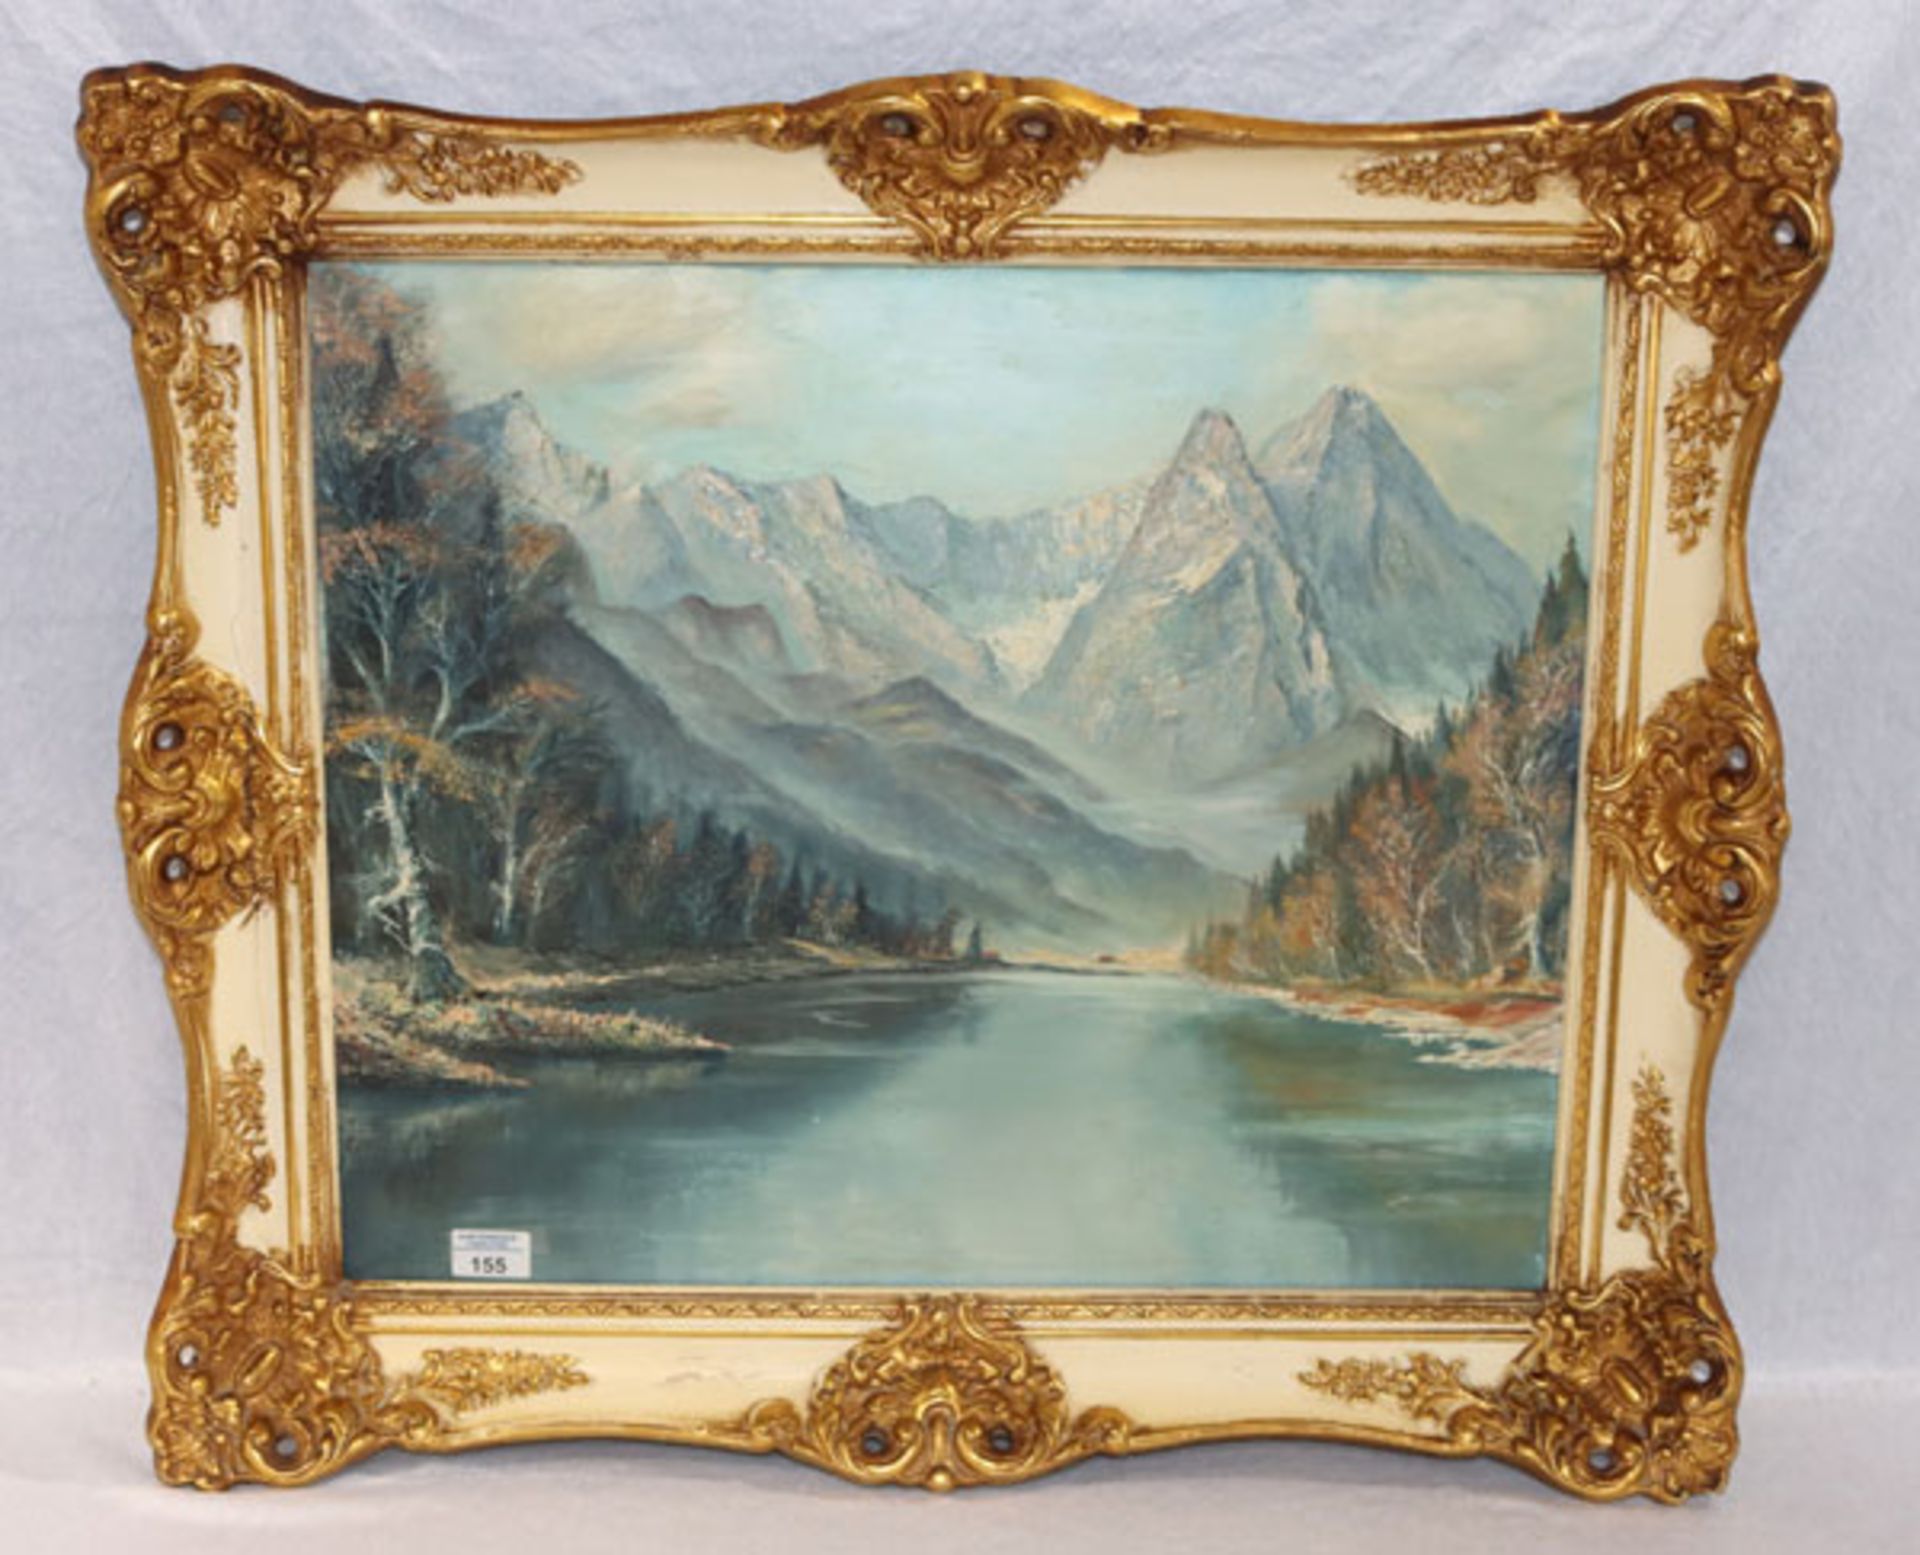 Gemälde ÖL/LW 'Riessersee mit Wettersteingebirge', gerahmt, Rahmen beschädigt und geklebt, incl.